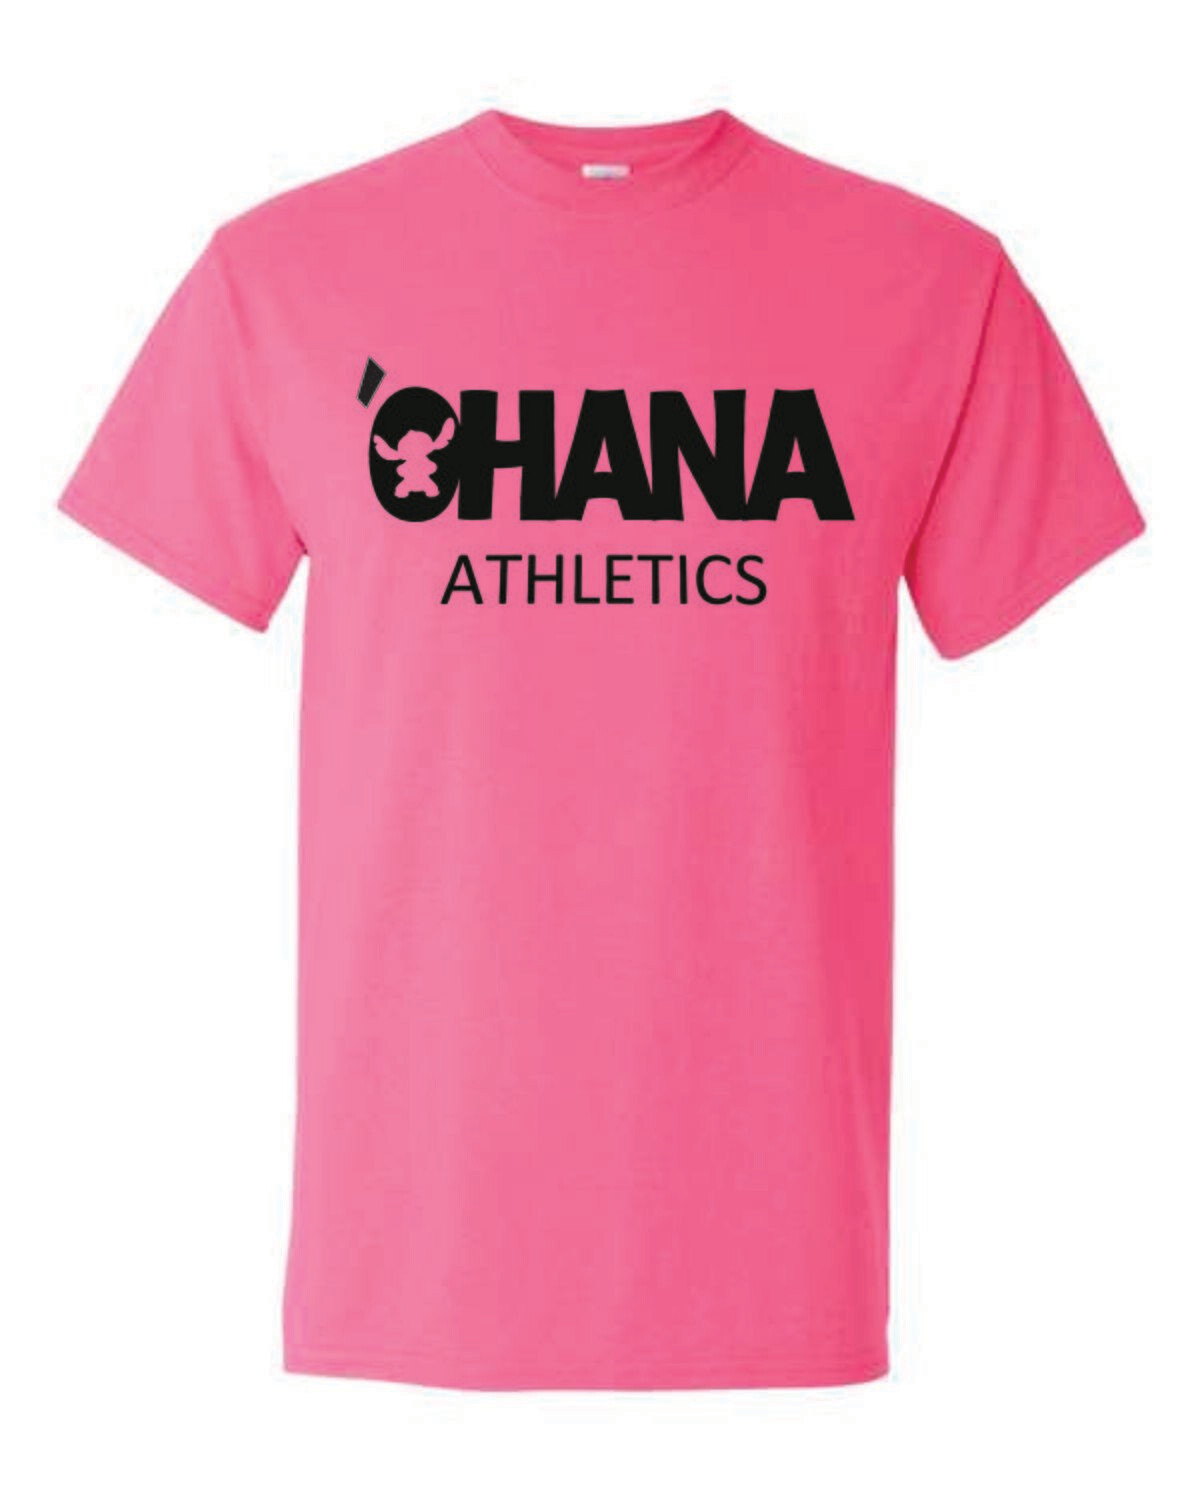 OHANA Athletics Shirt